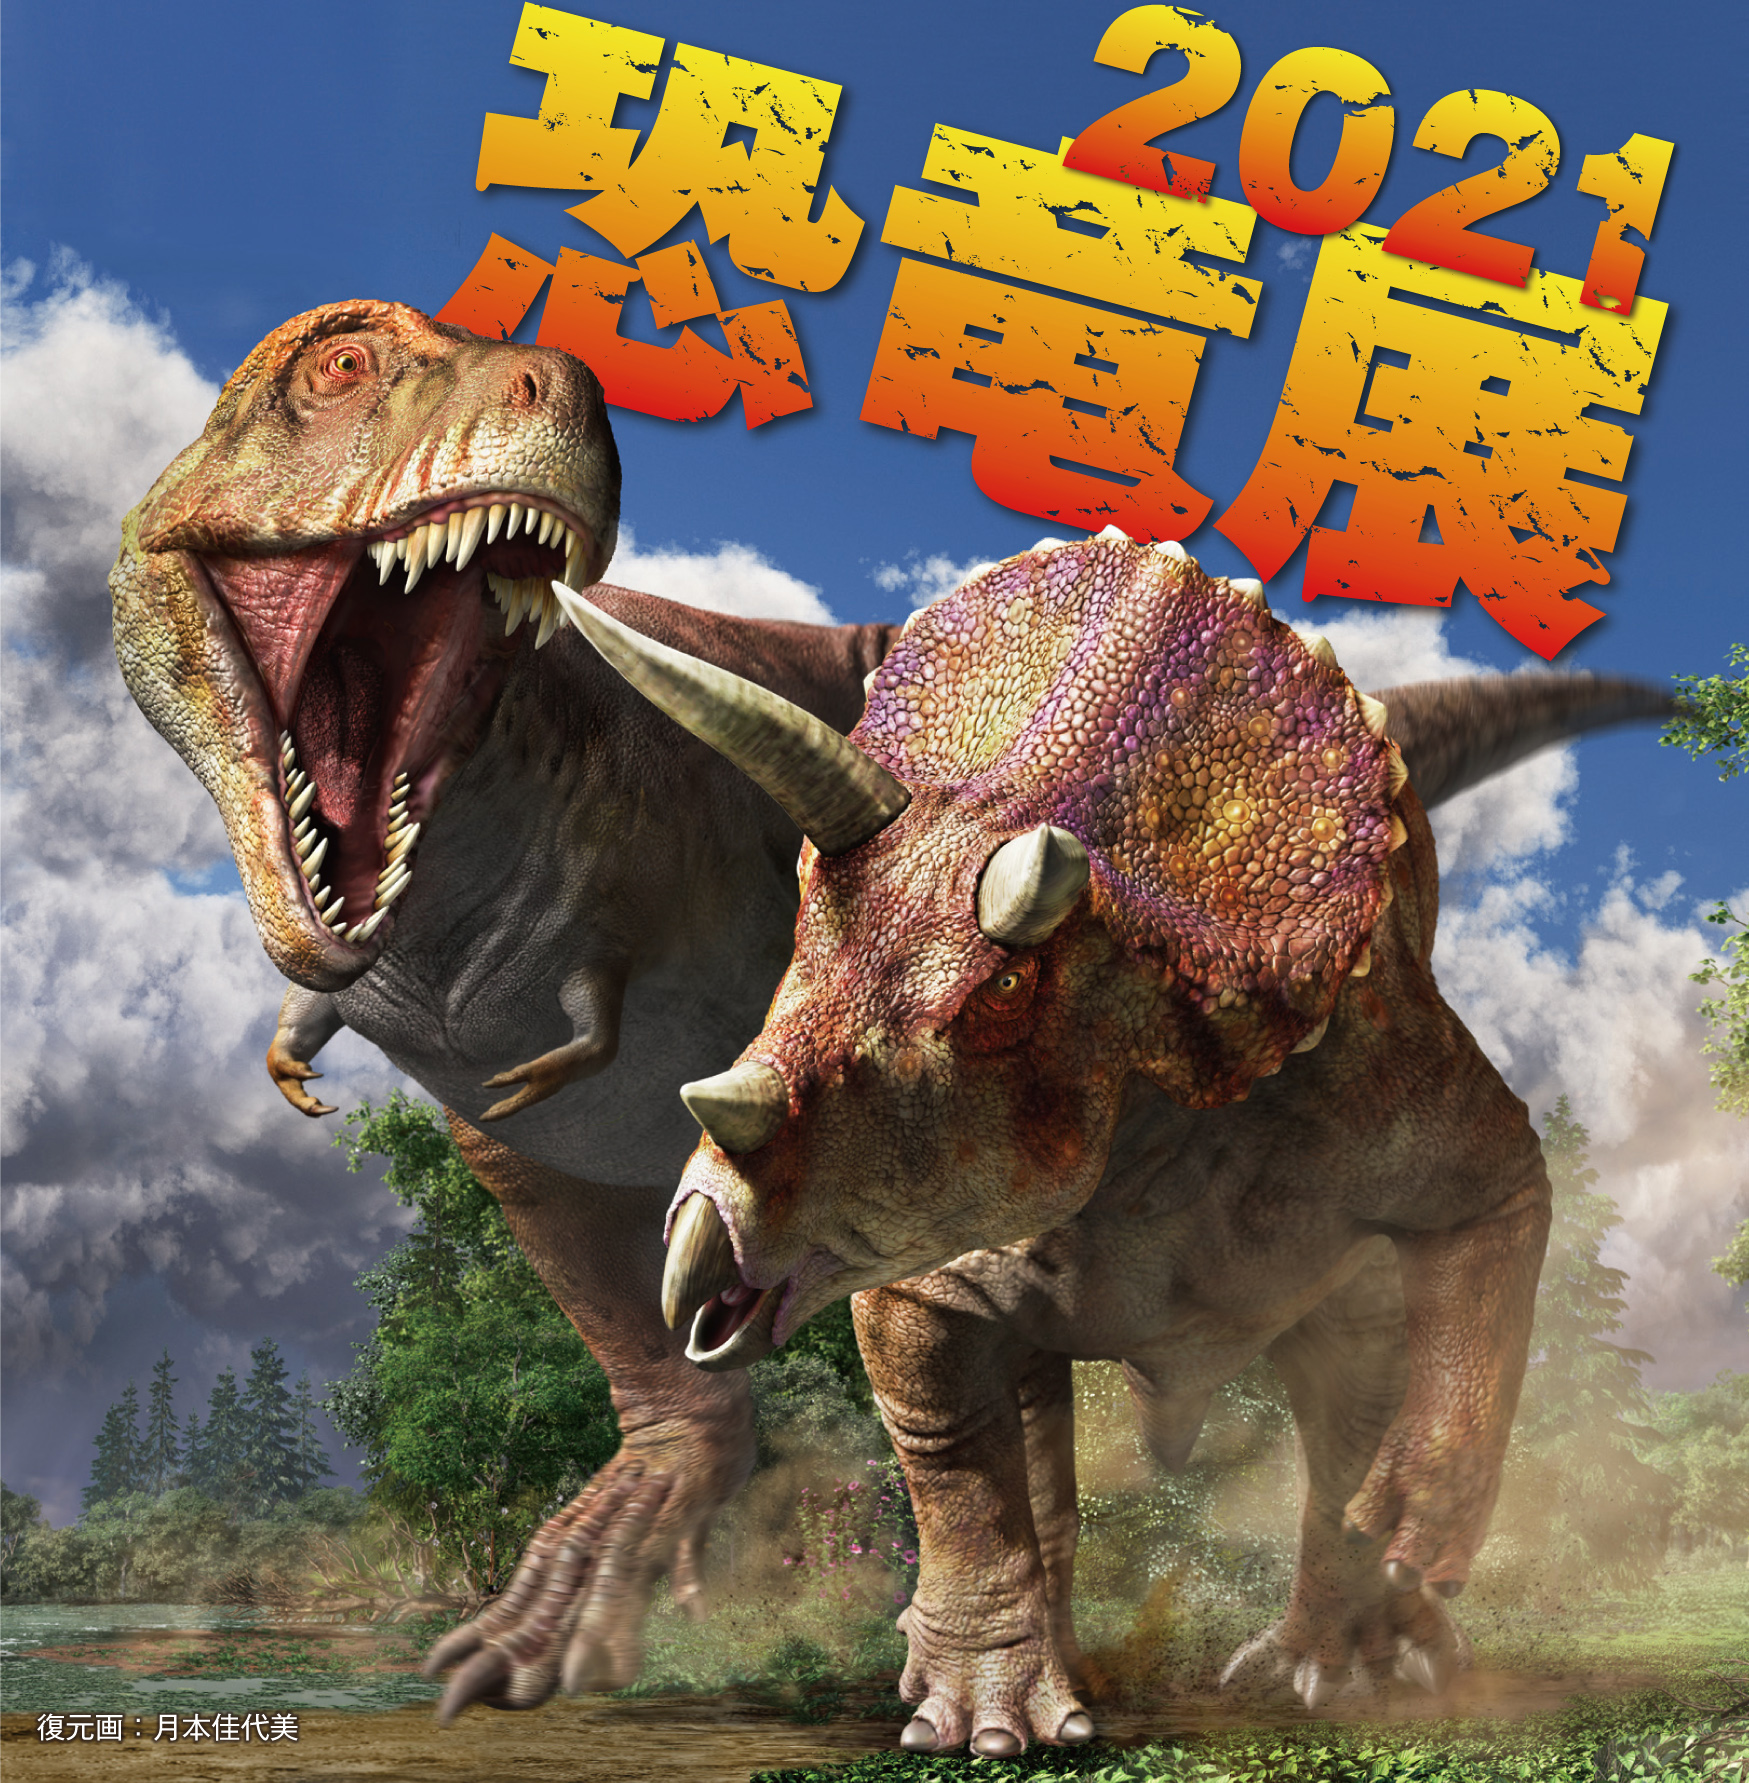 恐竜の生きた姿を体感できる『恐竜展2021』が7月より東京ドームシティで開催—福井県立恐竜博物館所蔵の全身復元骨格等を展示